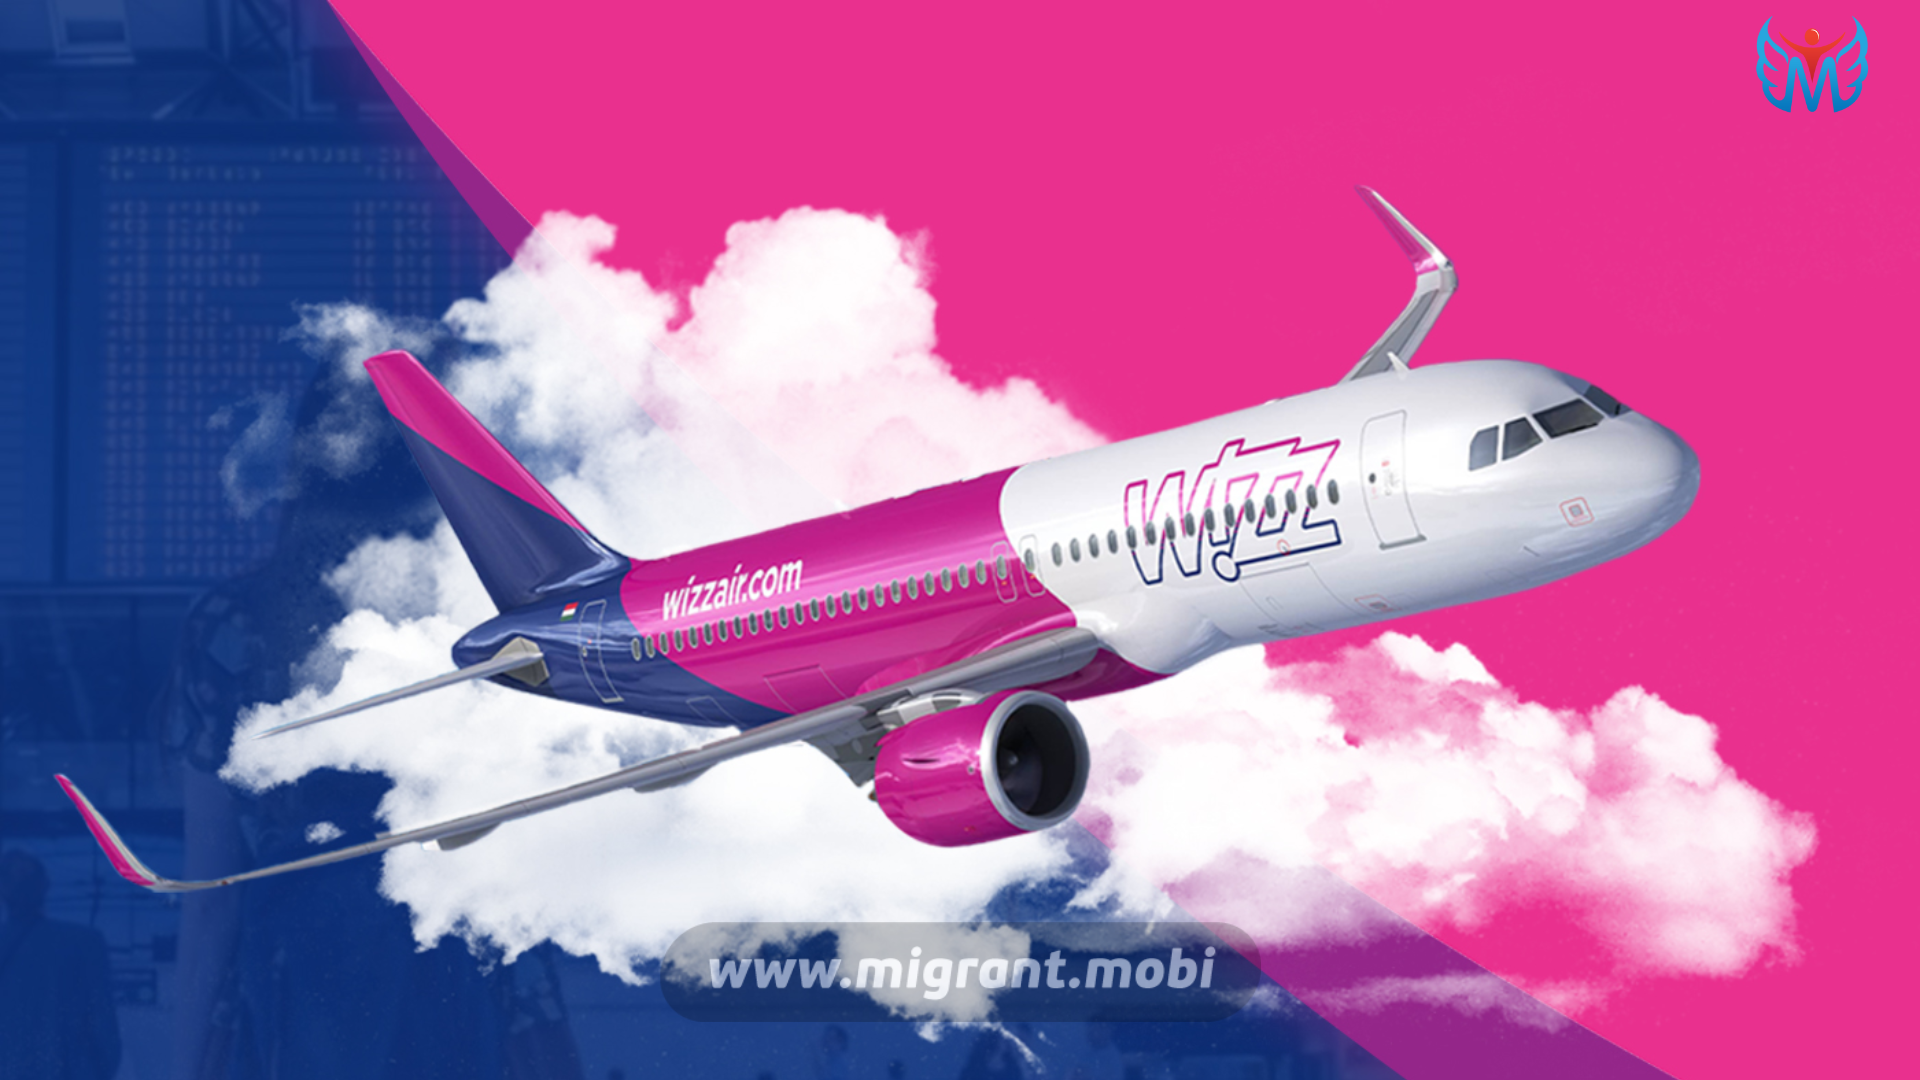 W iz. Wizz Air авиакомпания. Wizz Air uk авиакомпания. Венгерские авиалинии Wizzair самолеты. Авиакомпания Wizz Air логотип.